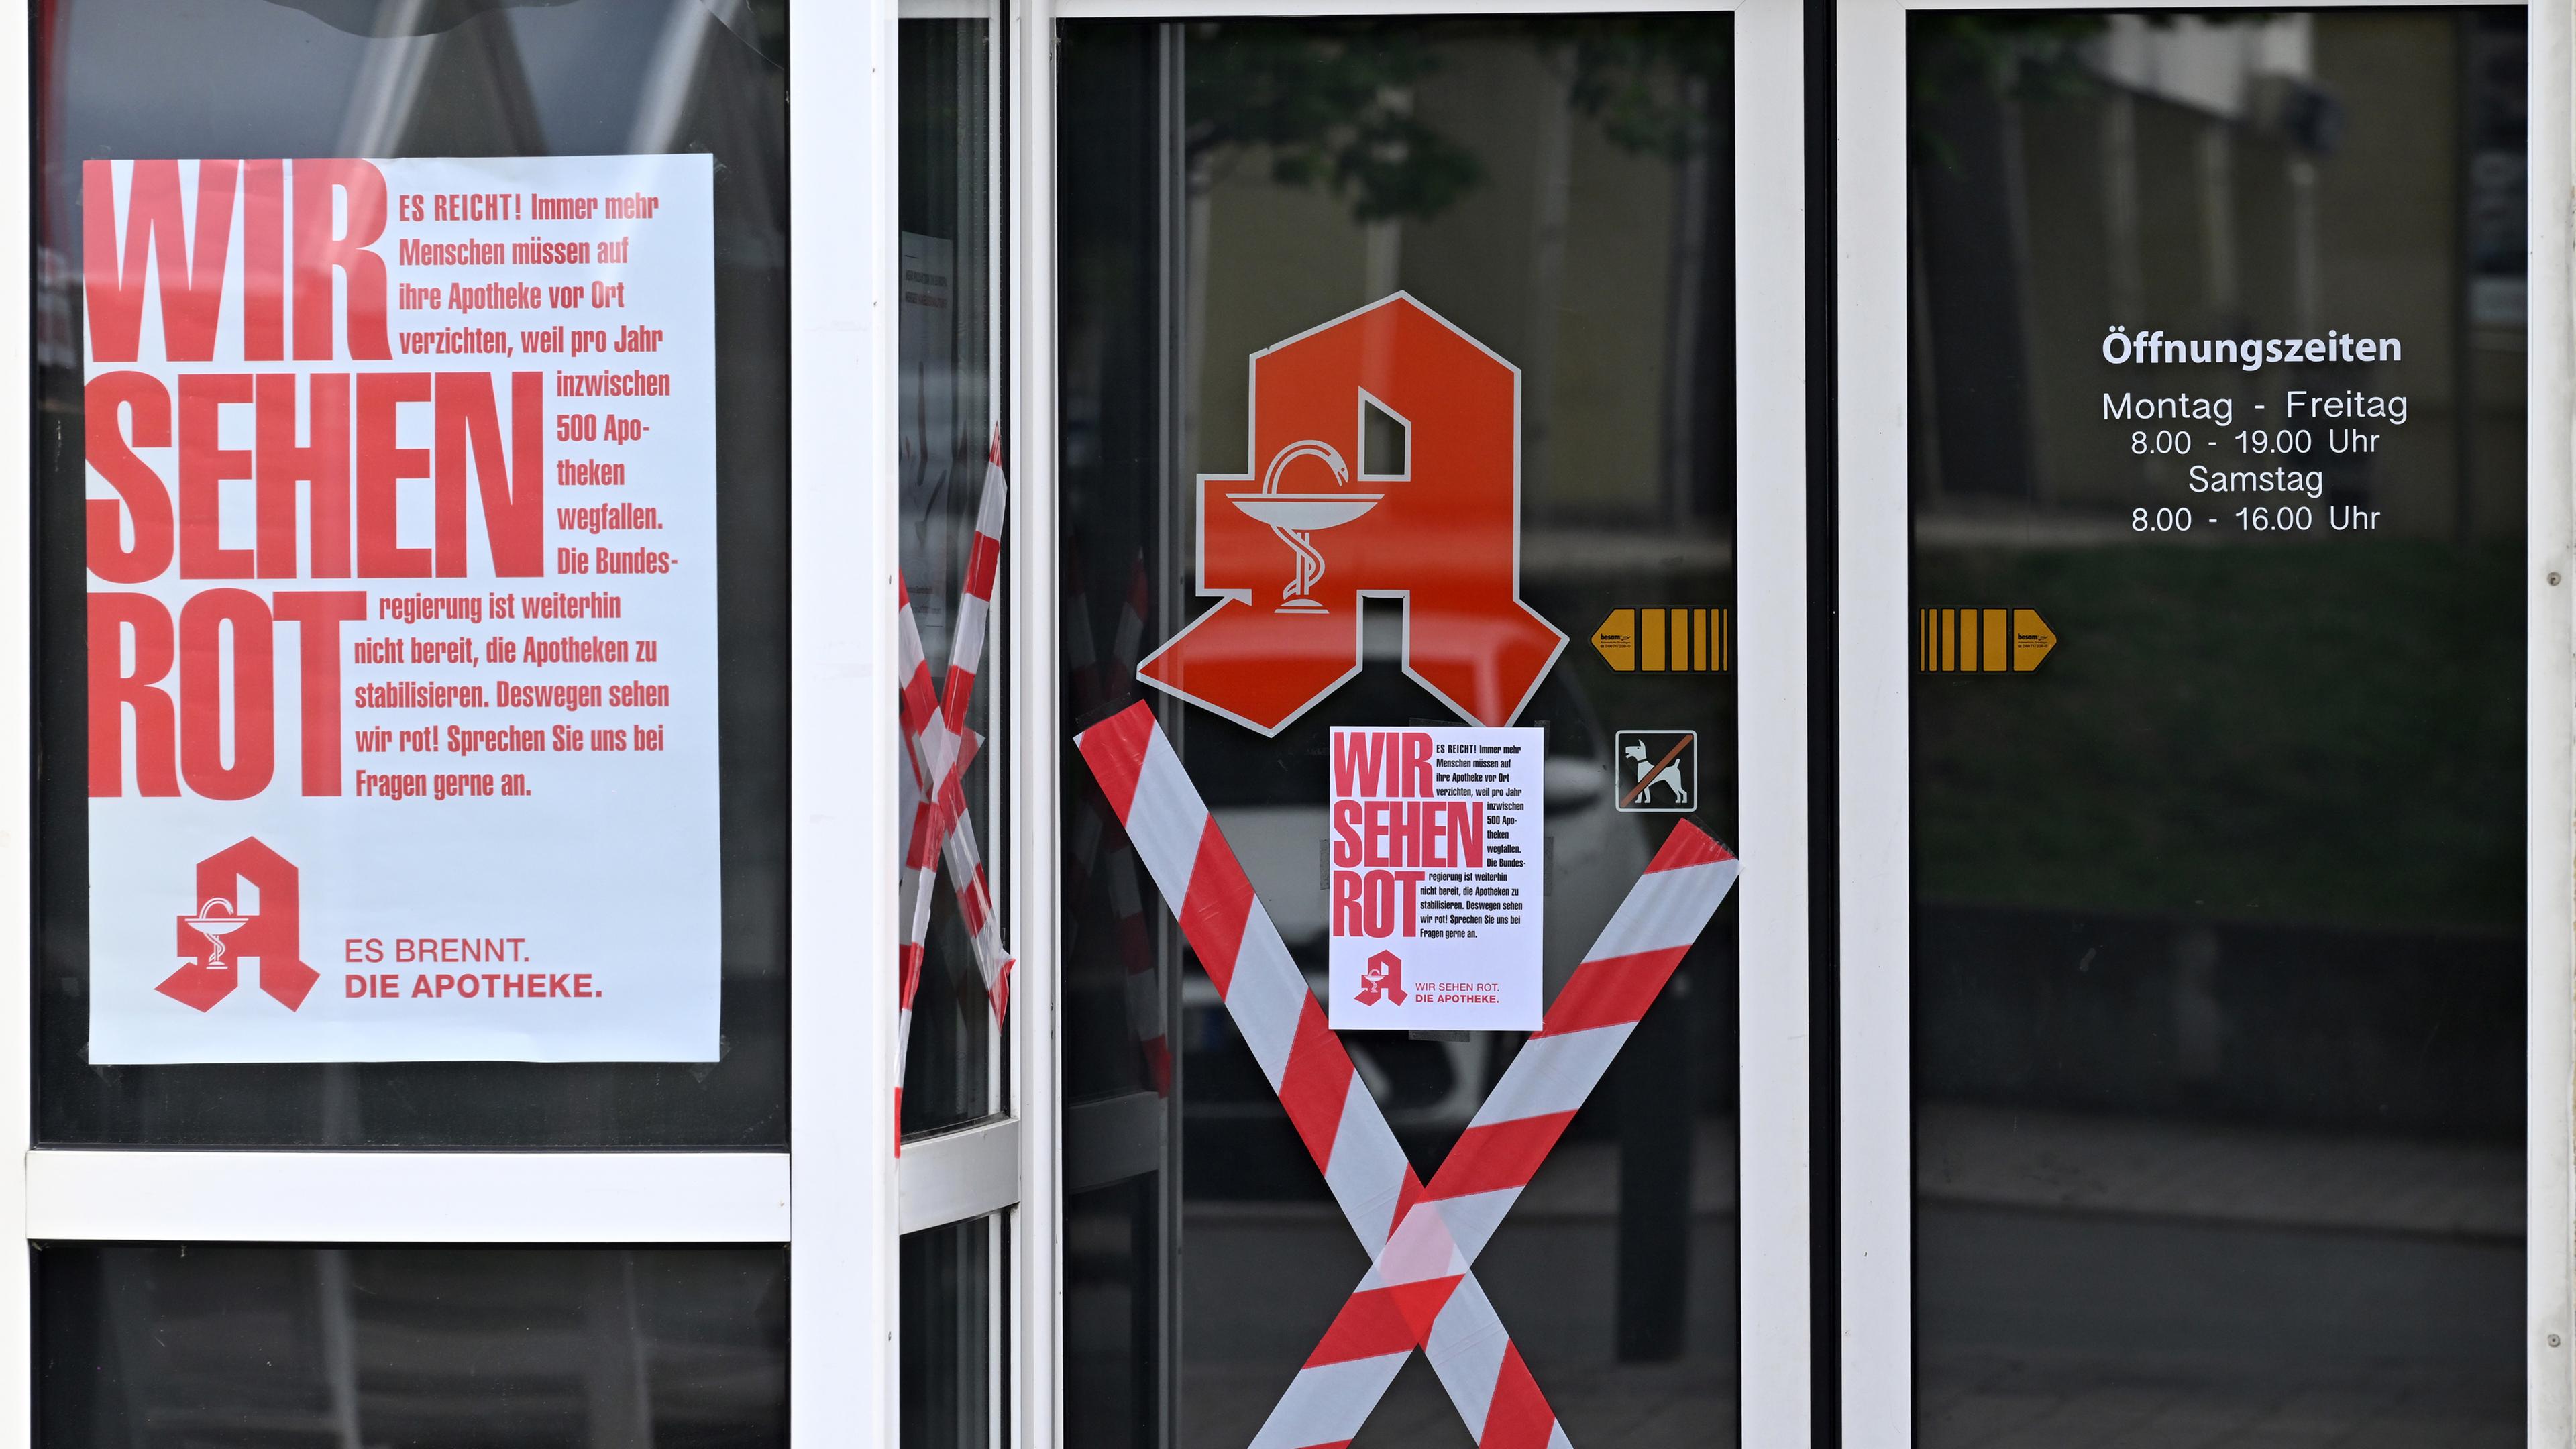 Thüringen, Gera: "Wir sehen Rot" steht auf dem Plakat am Eingang zu einer Apotheke in Gera-Lusan.